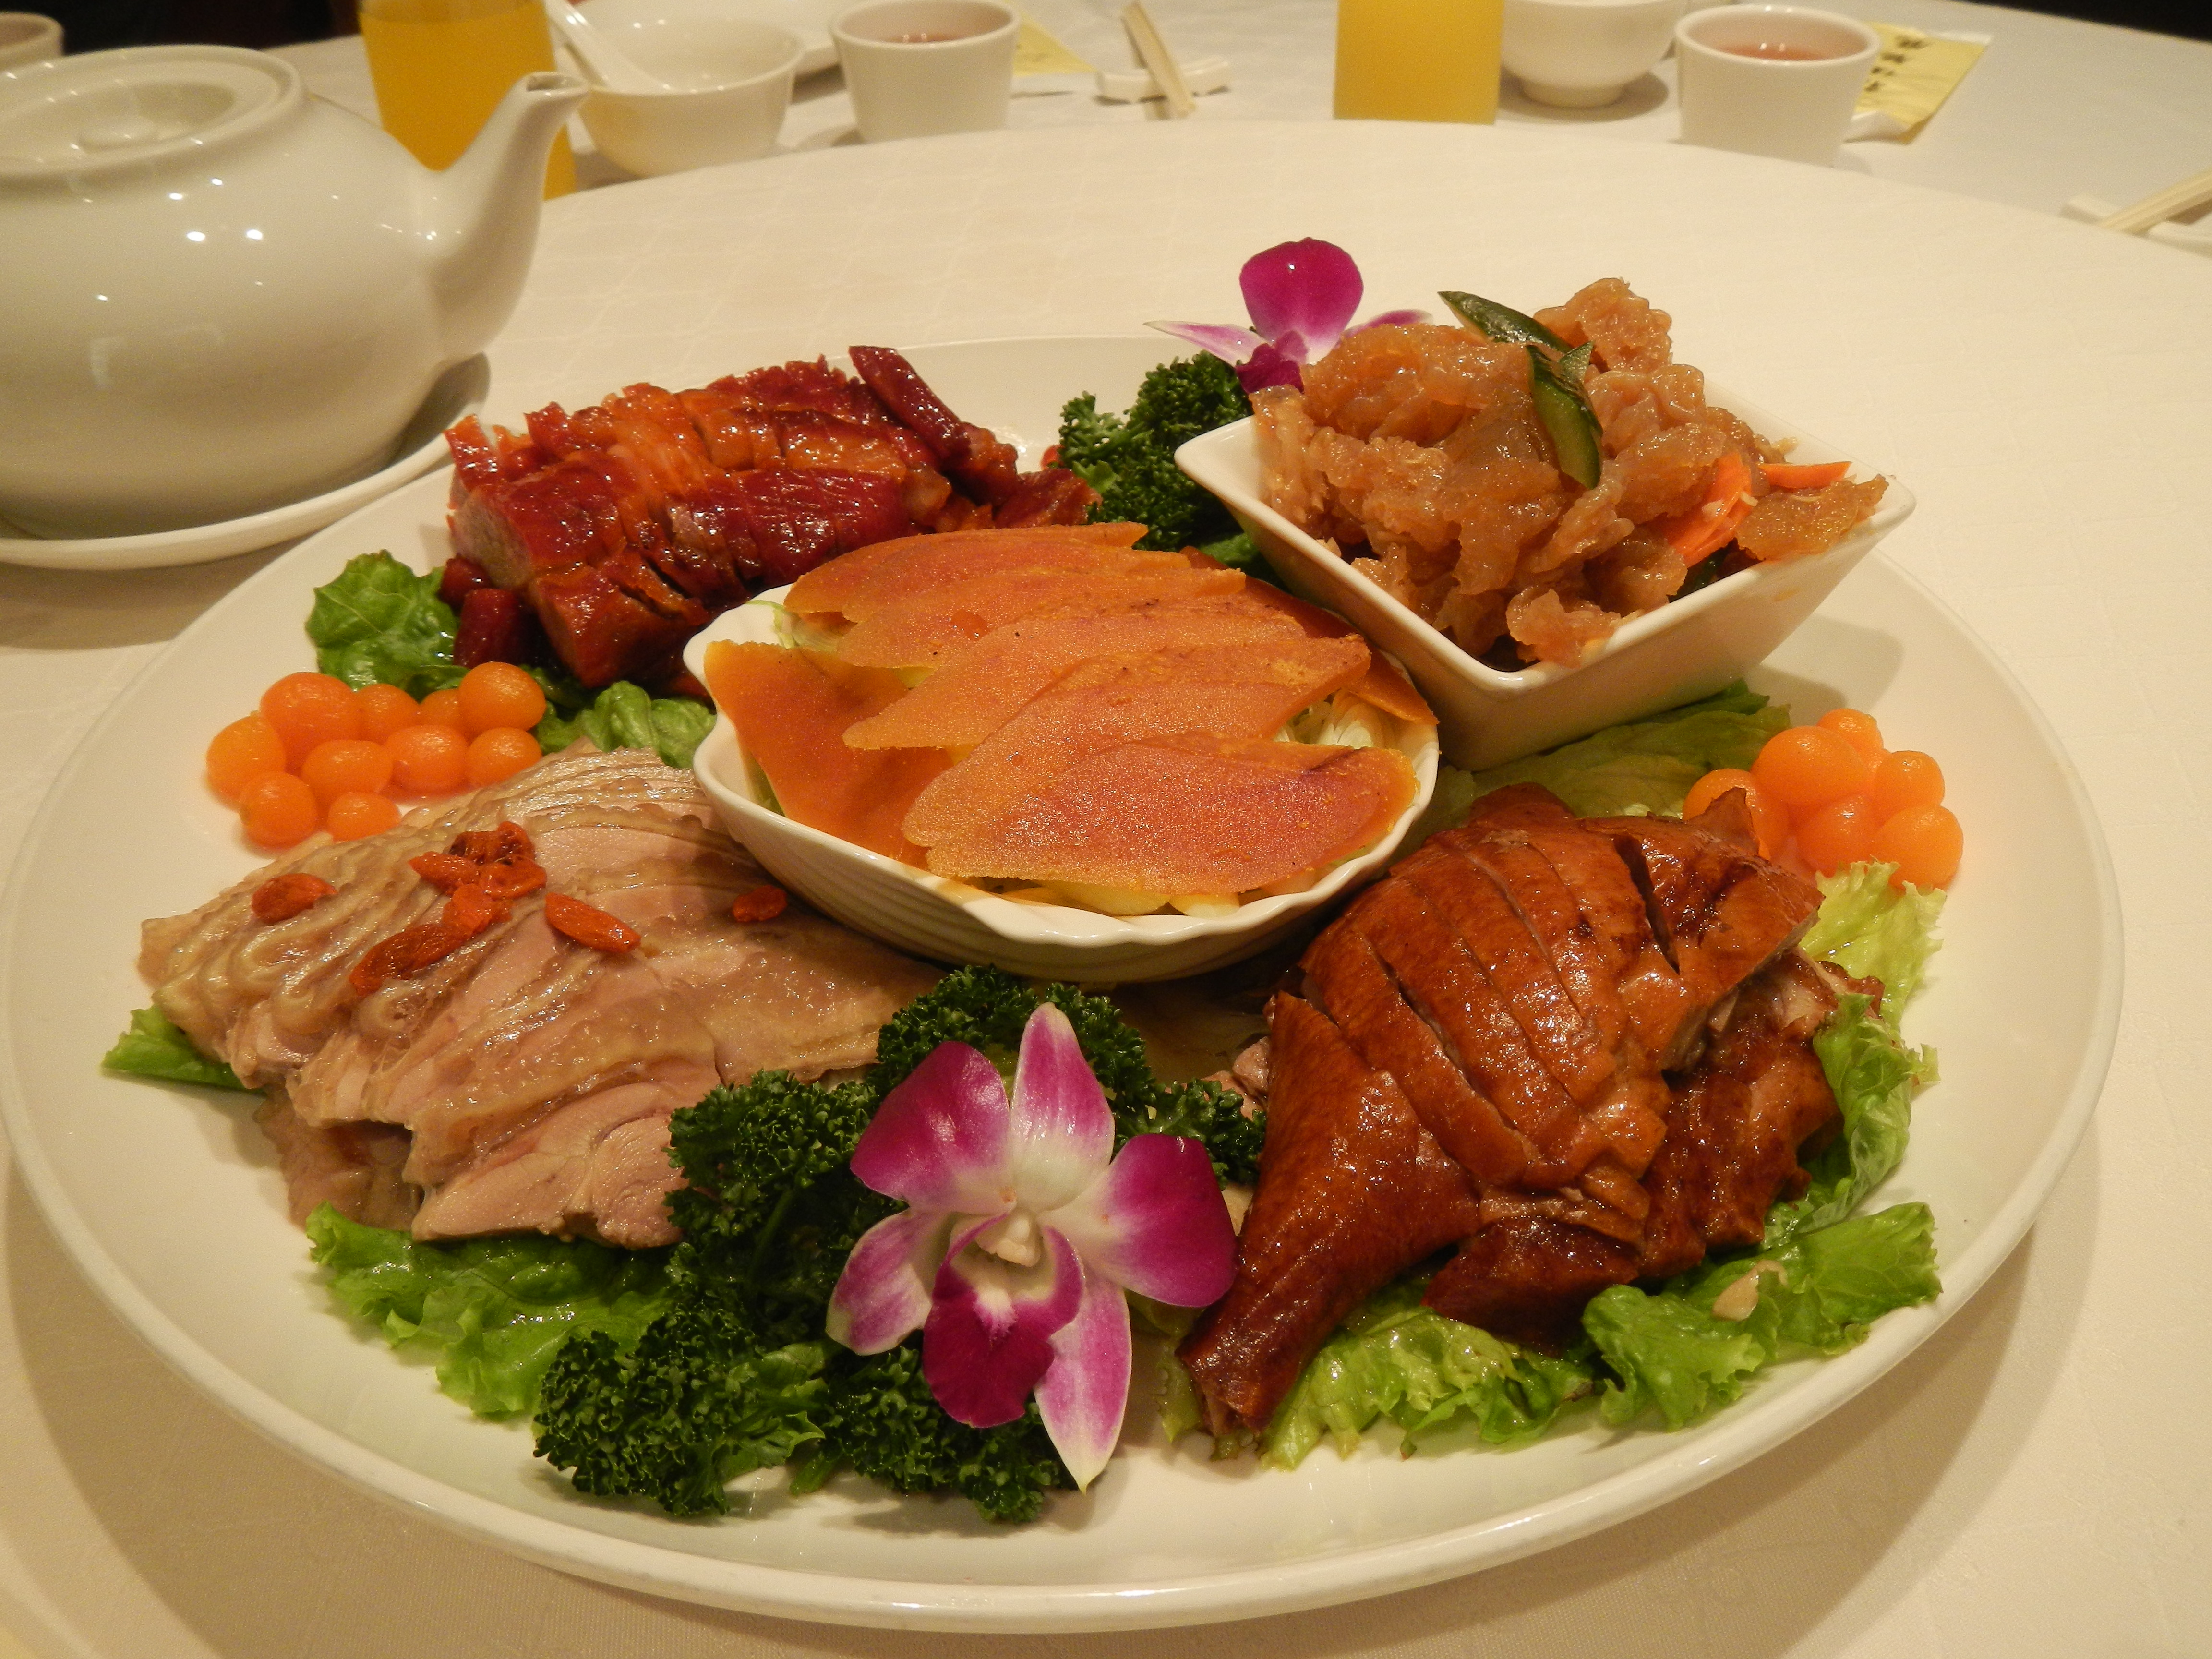 Food in Taiwan